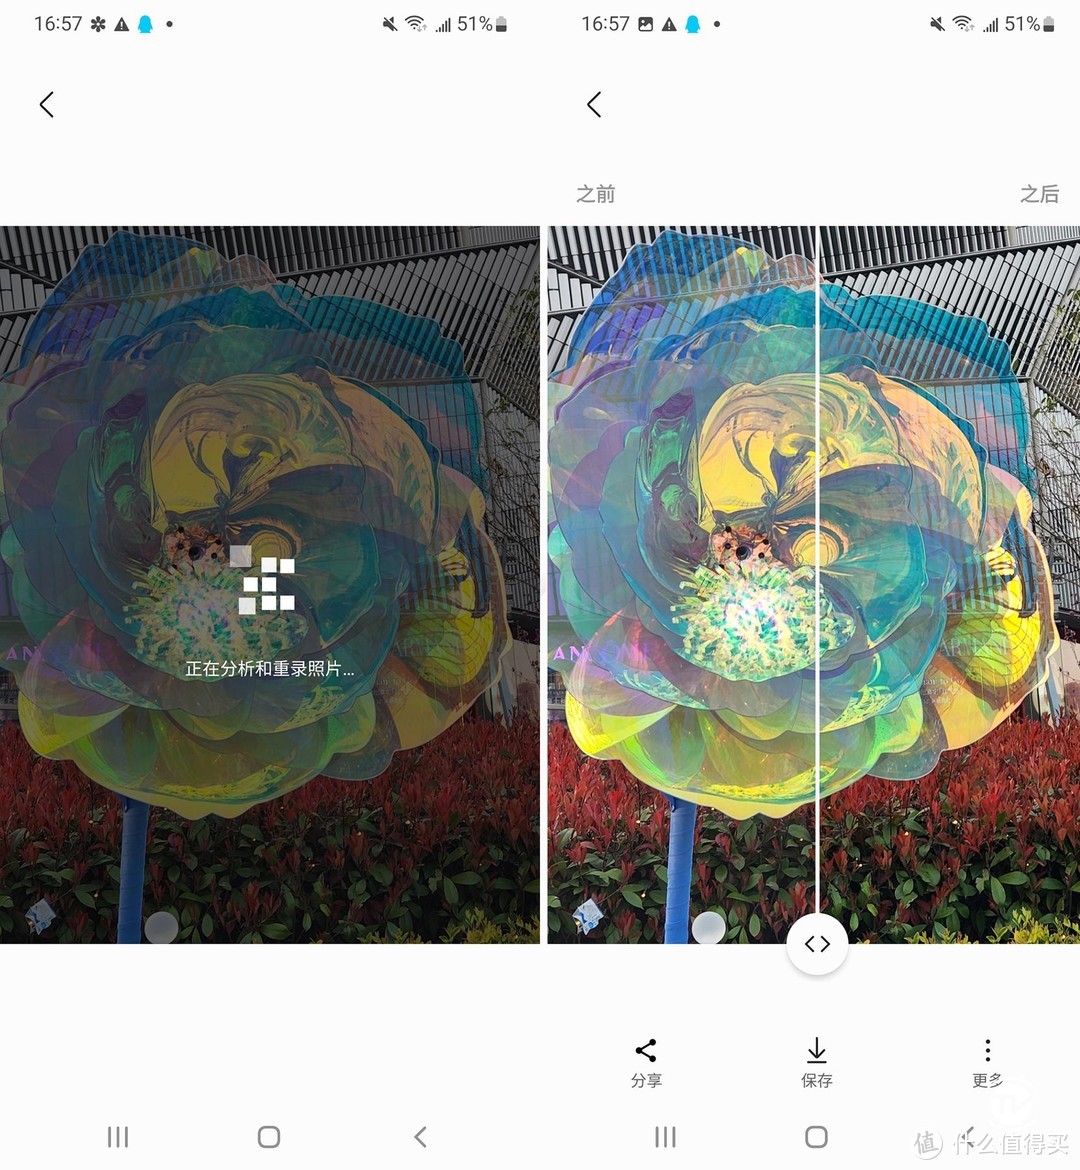 三星Galaxy S22+评测：超视觉夜拍系统加持 全能安卓旗舰手机